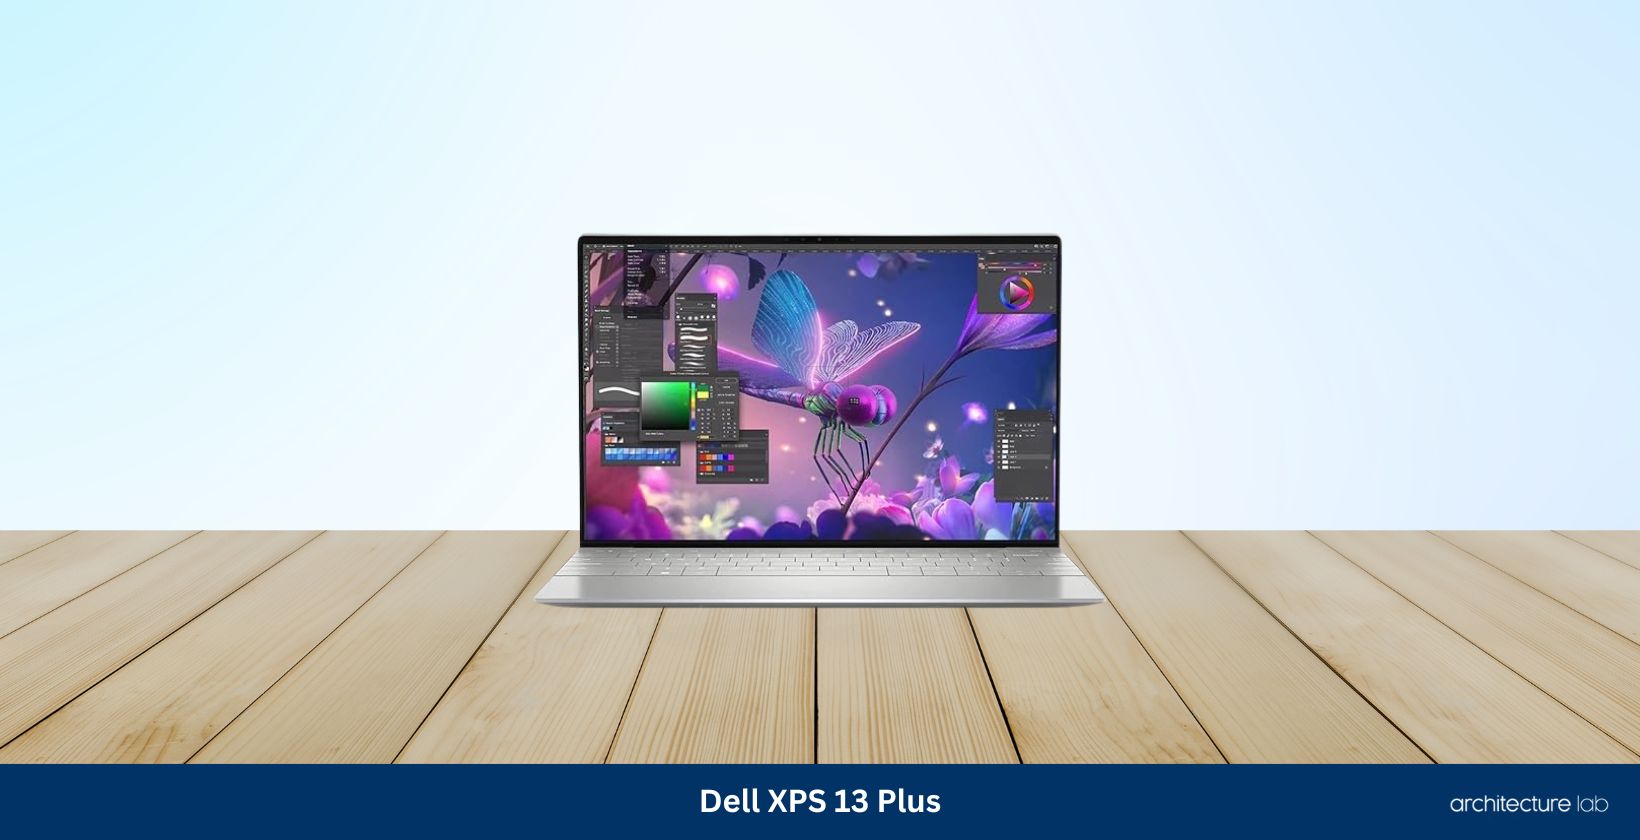 Dell xps 13 plus